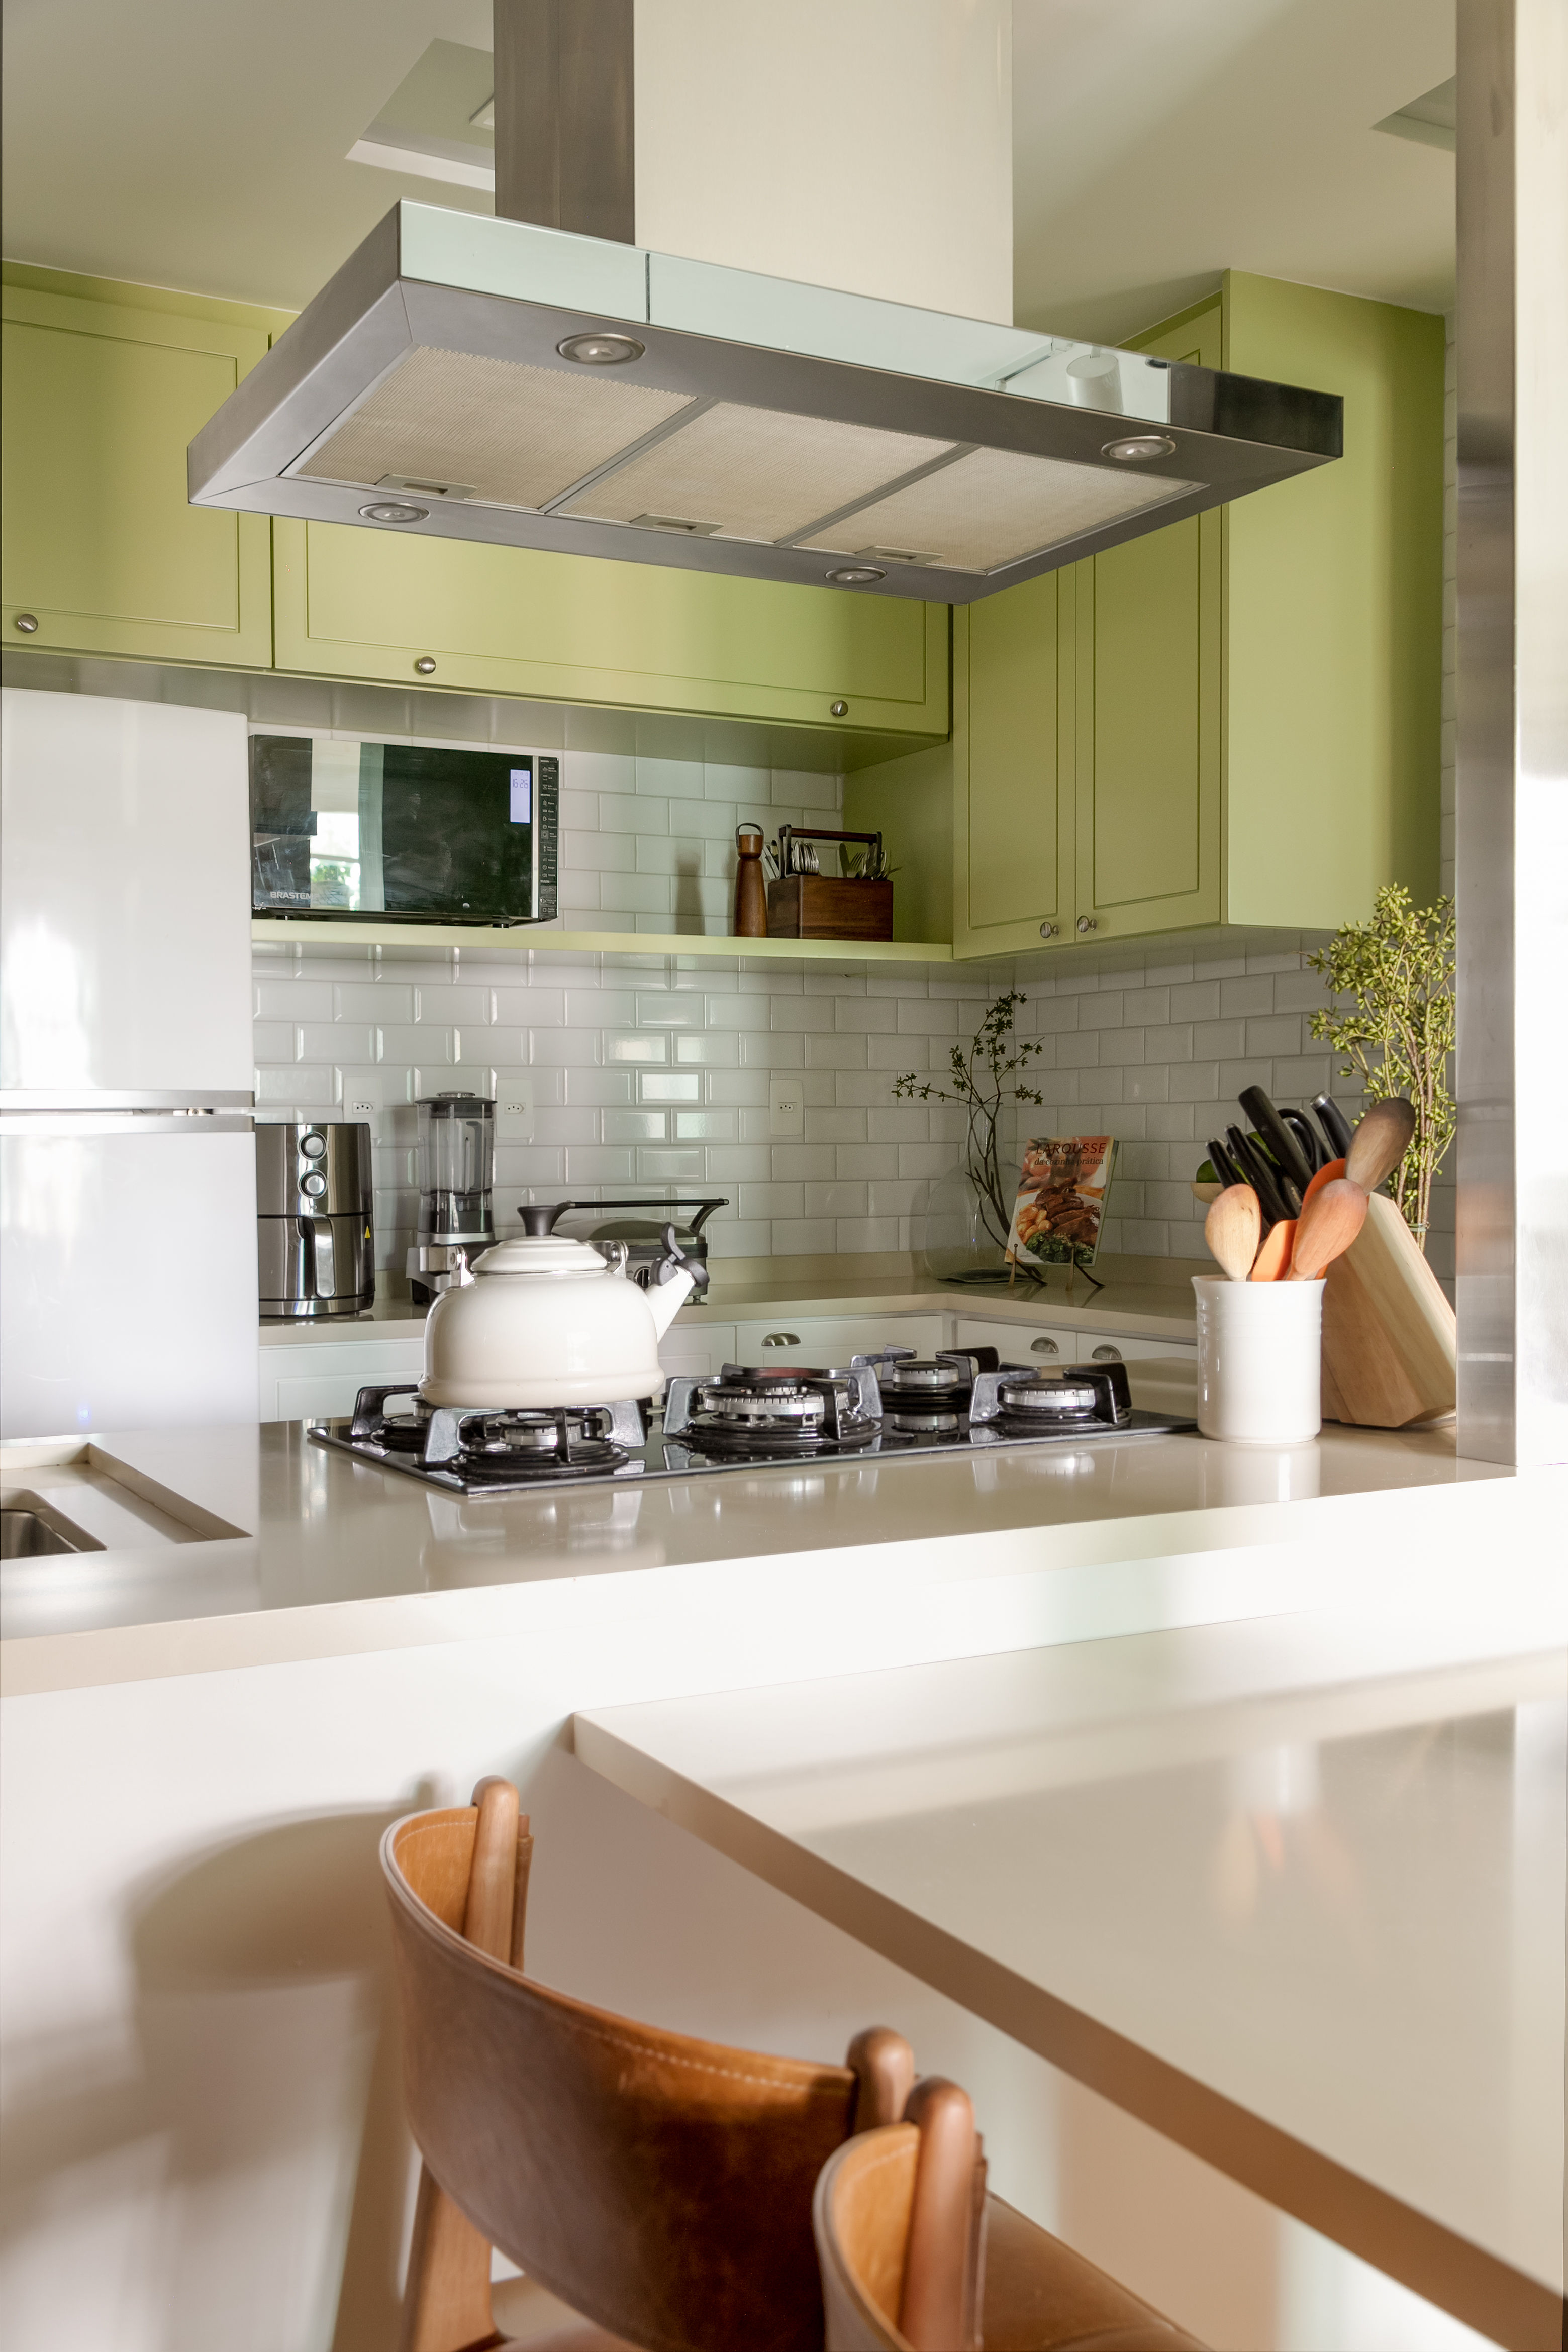 Projeto de Marcela Martins. Na foto, cozinha integrada com bancada branca e marcenaria verde.